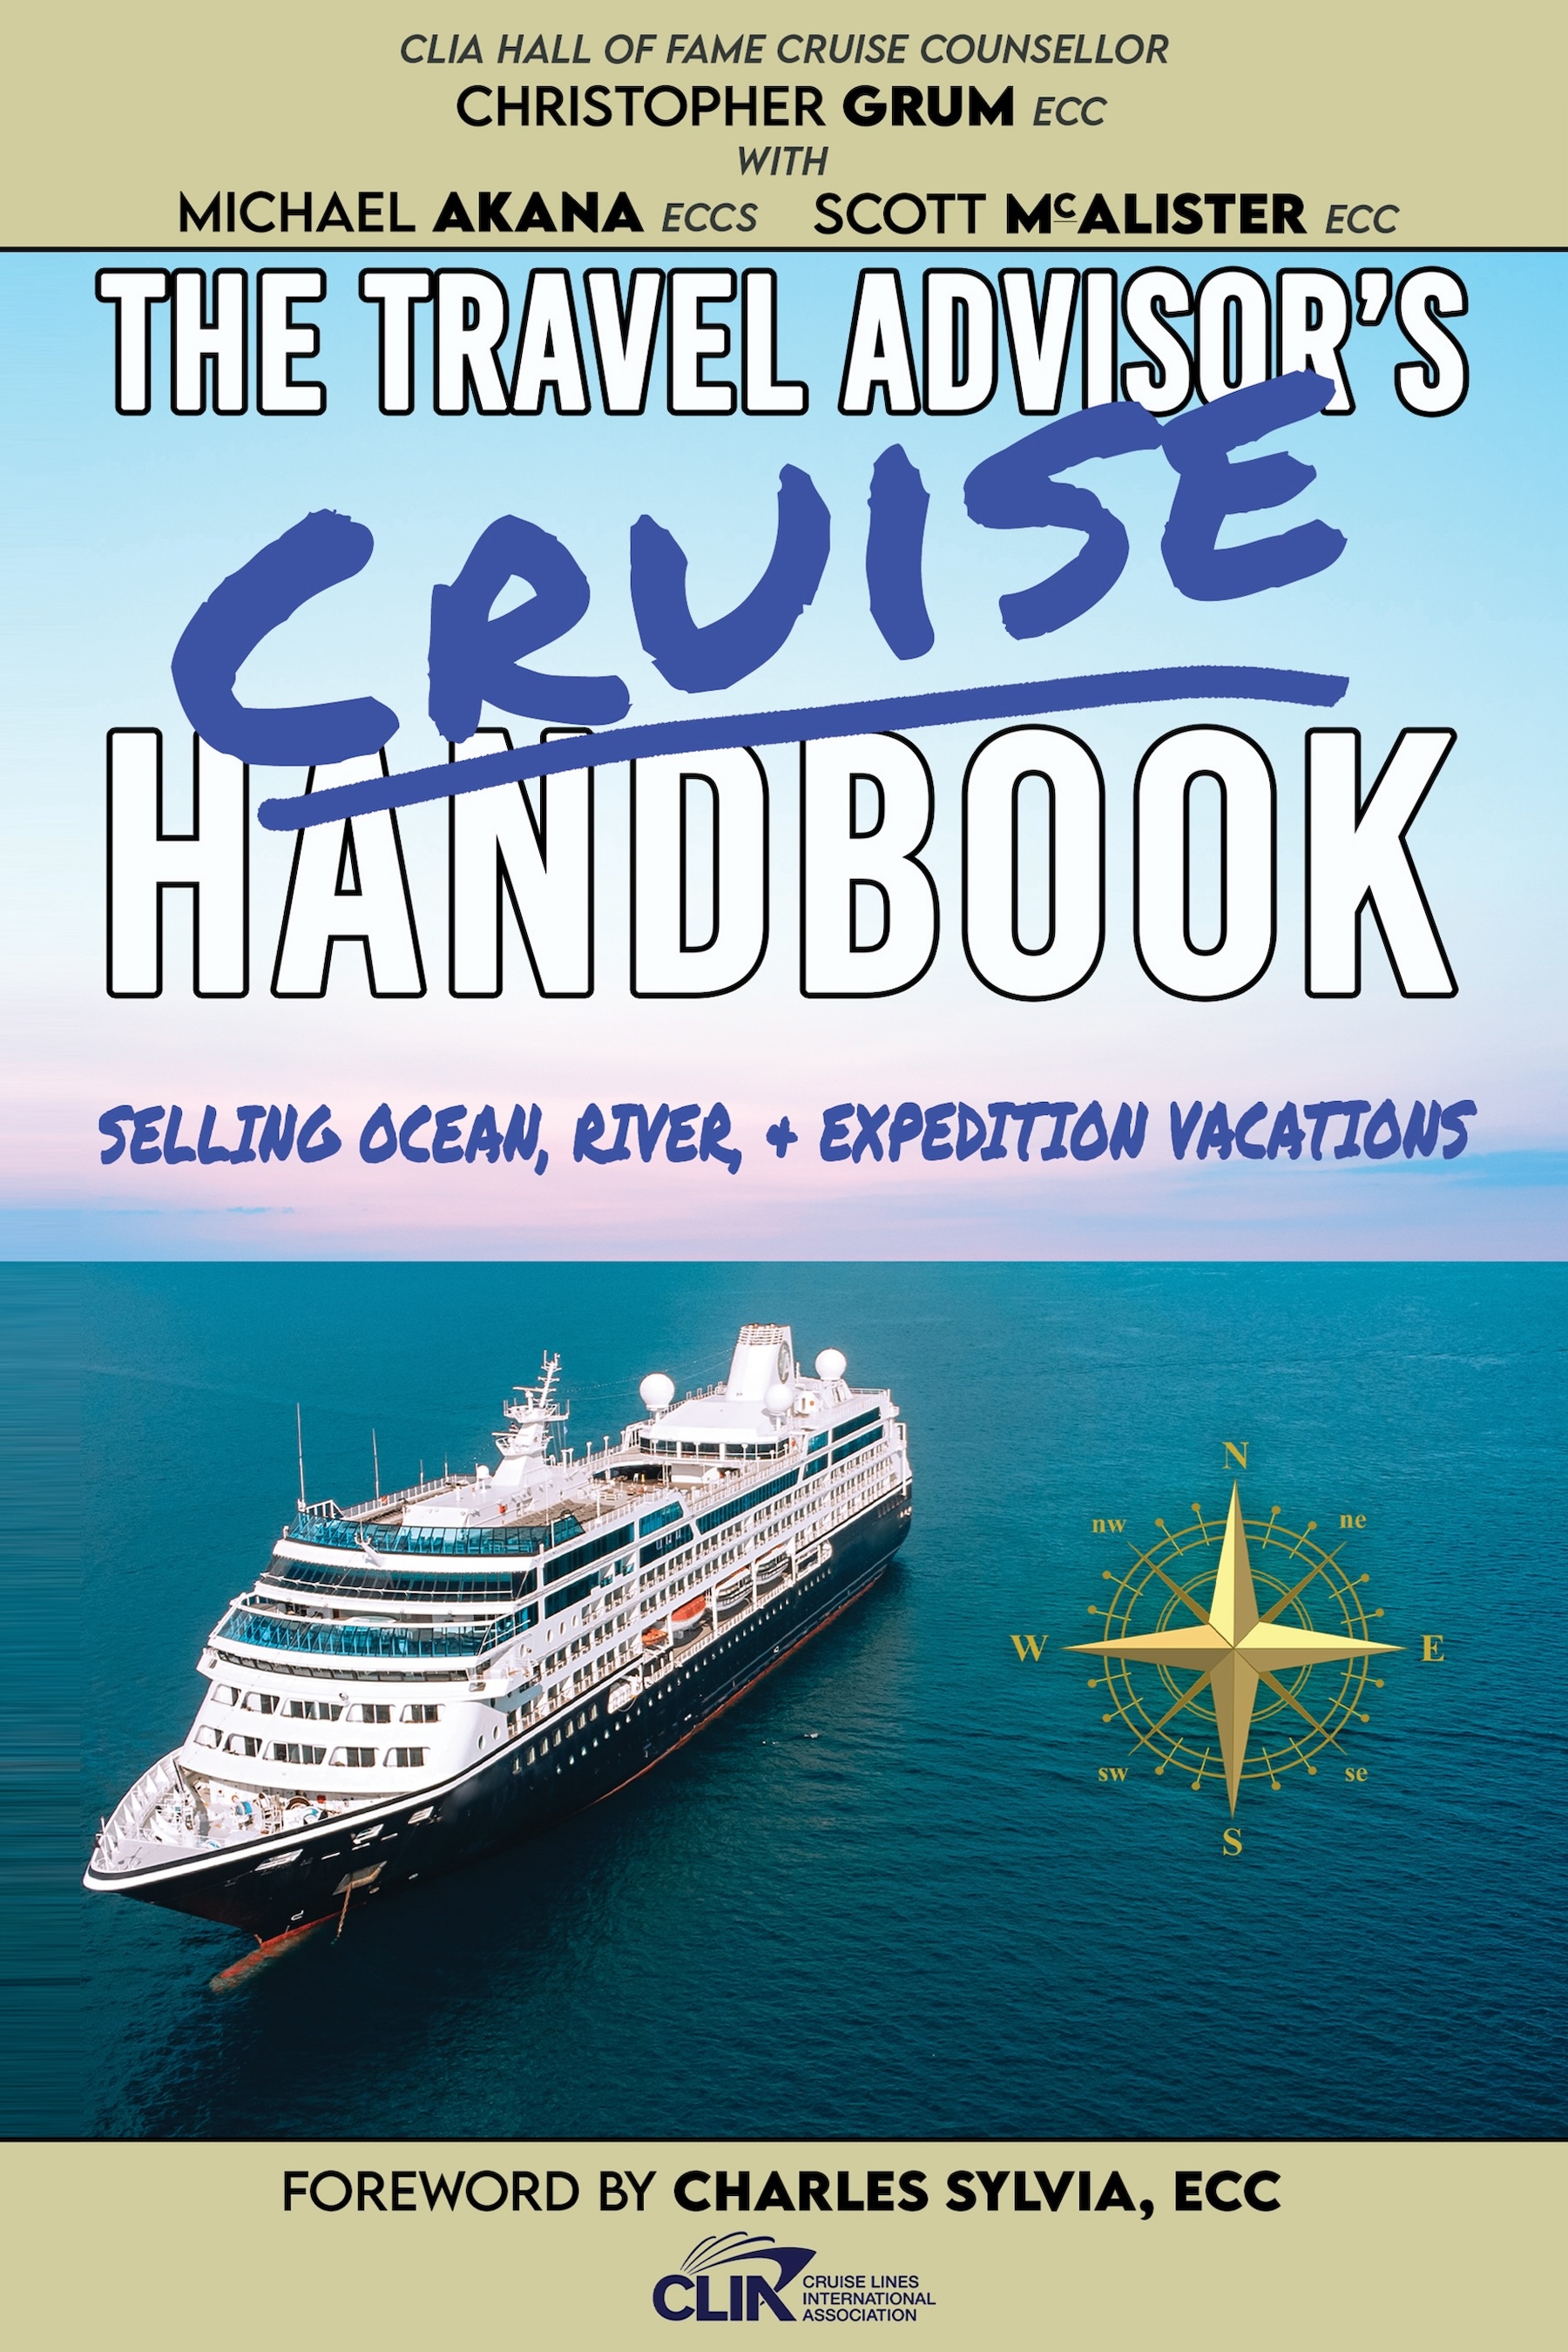 The Travel Advisor's Cruise Handbook